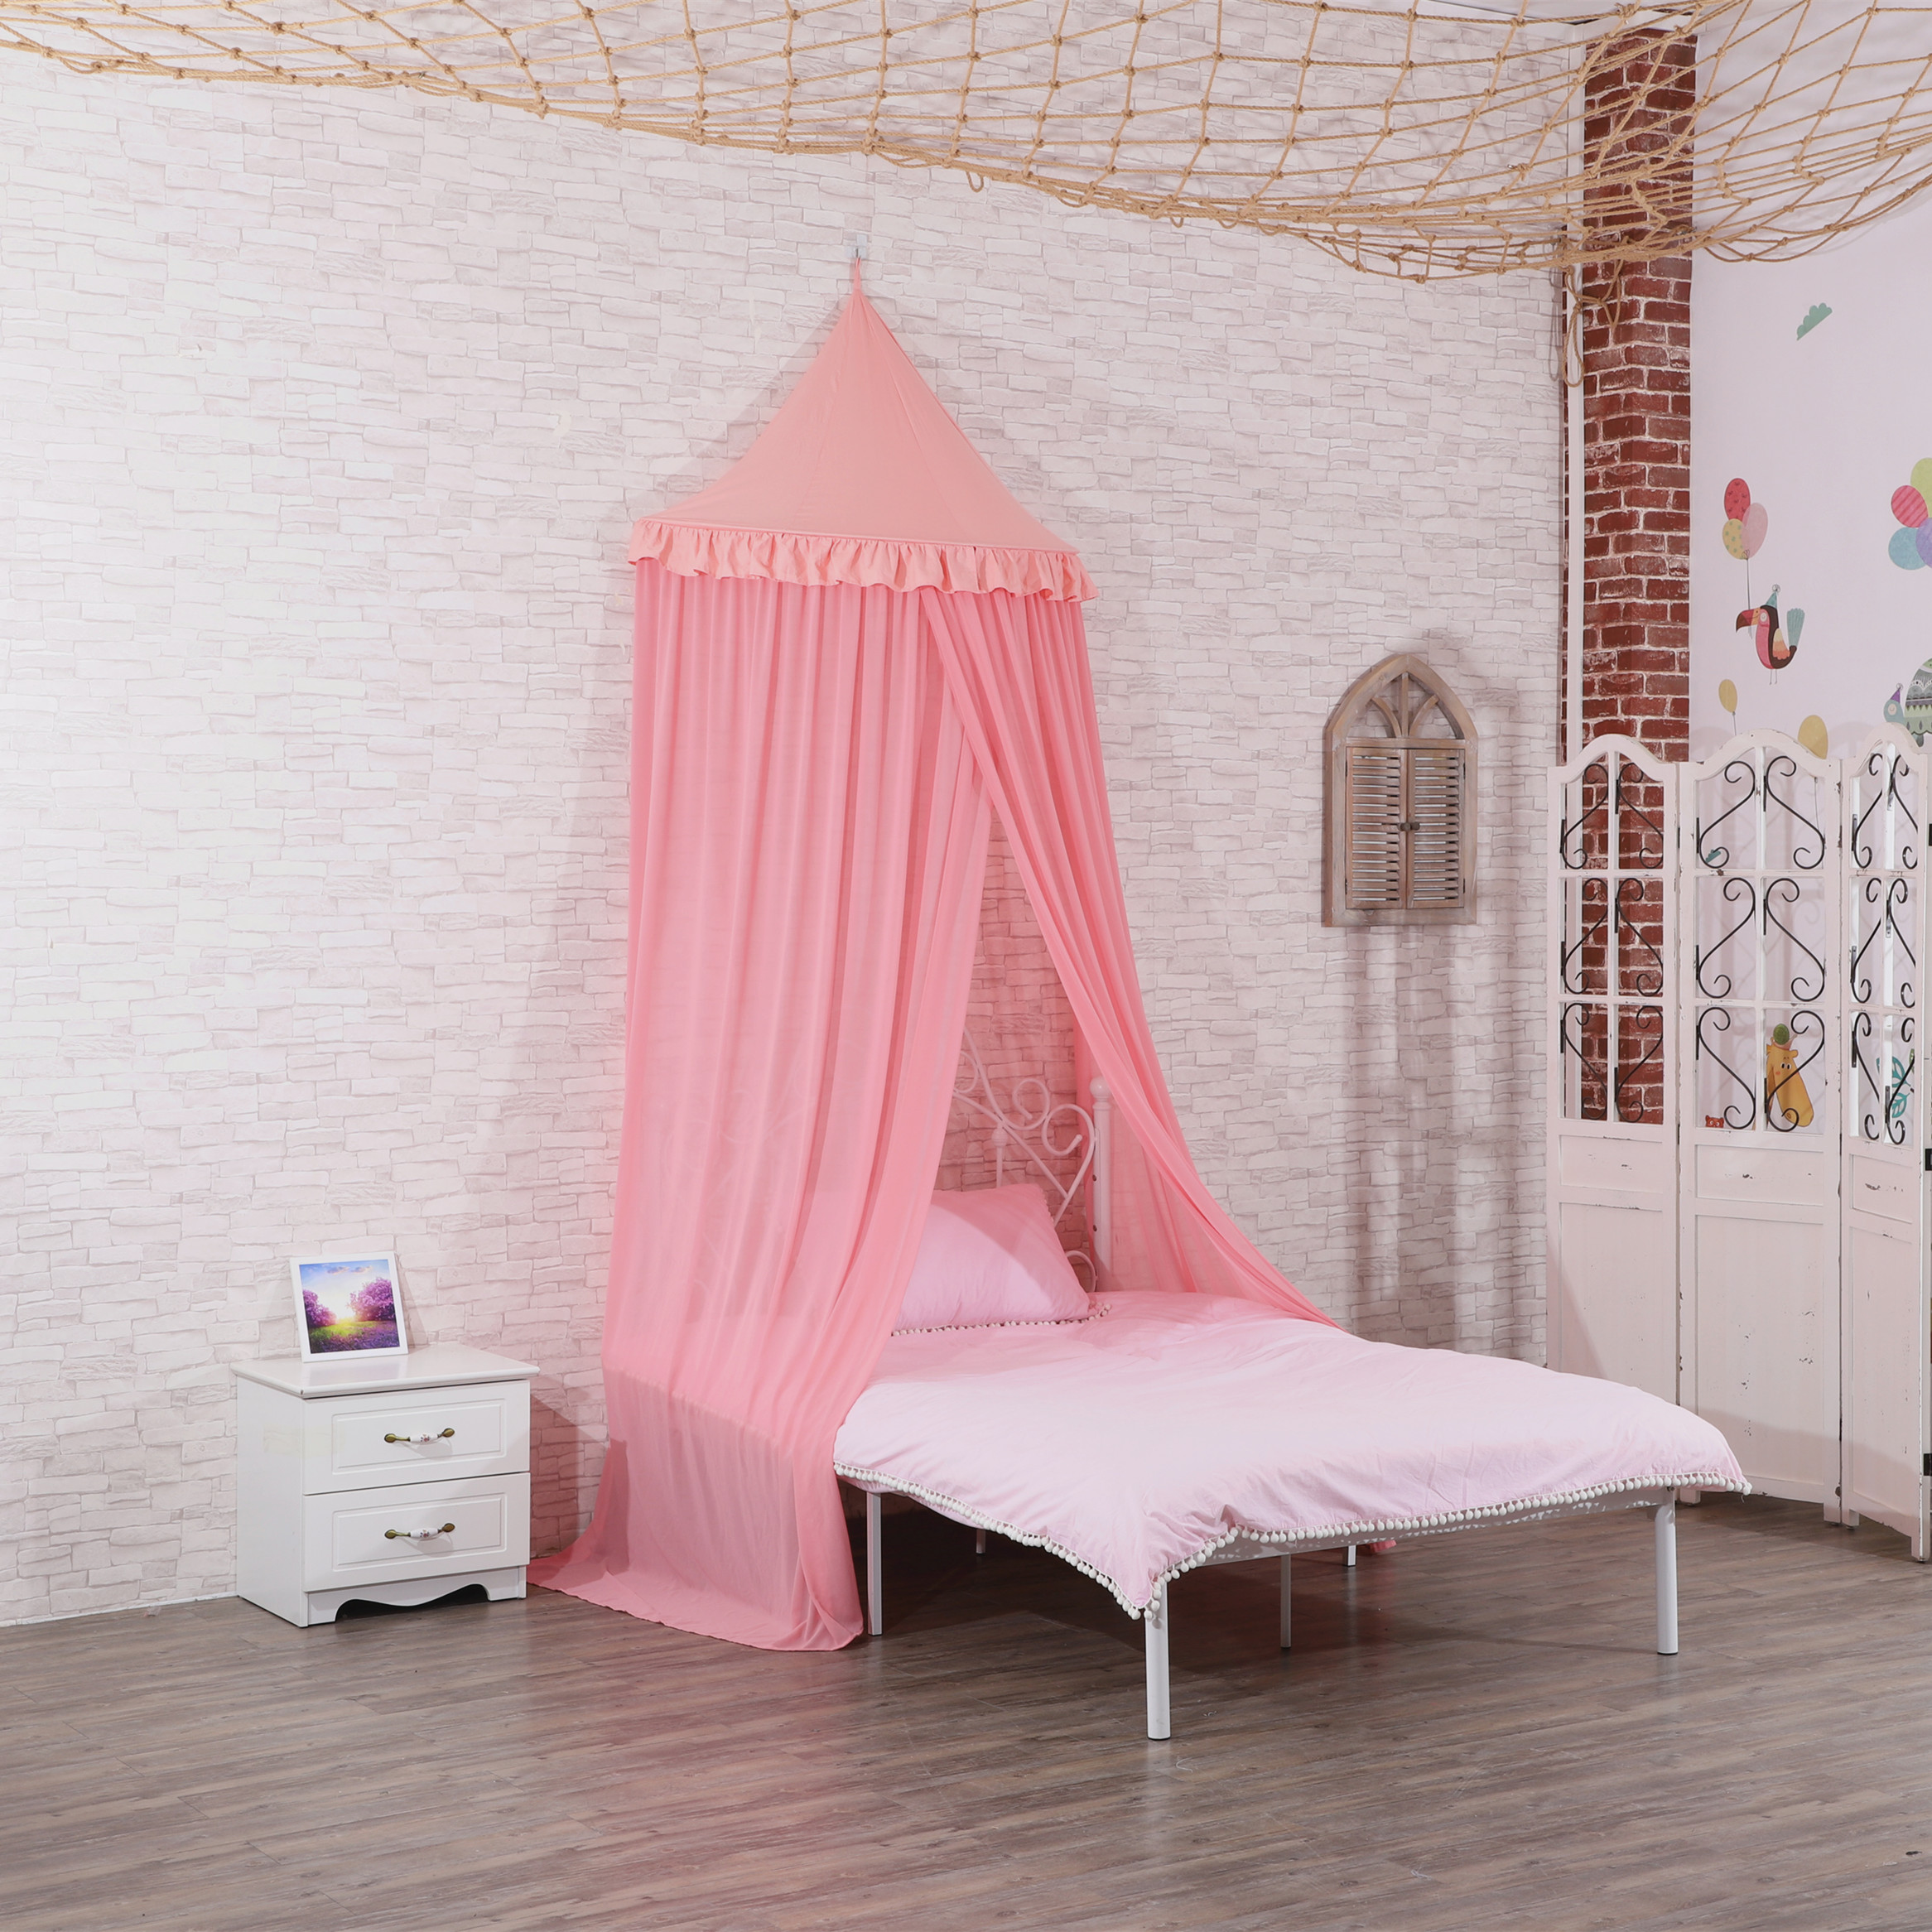 Tienda de paraguas de algodón colgante rosa de jardín interior de alta calidad, tienda de mosquitera de juego de Castillo bonito de princesa favorita para niña